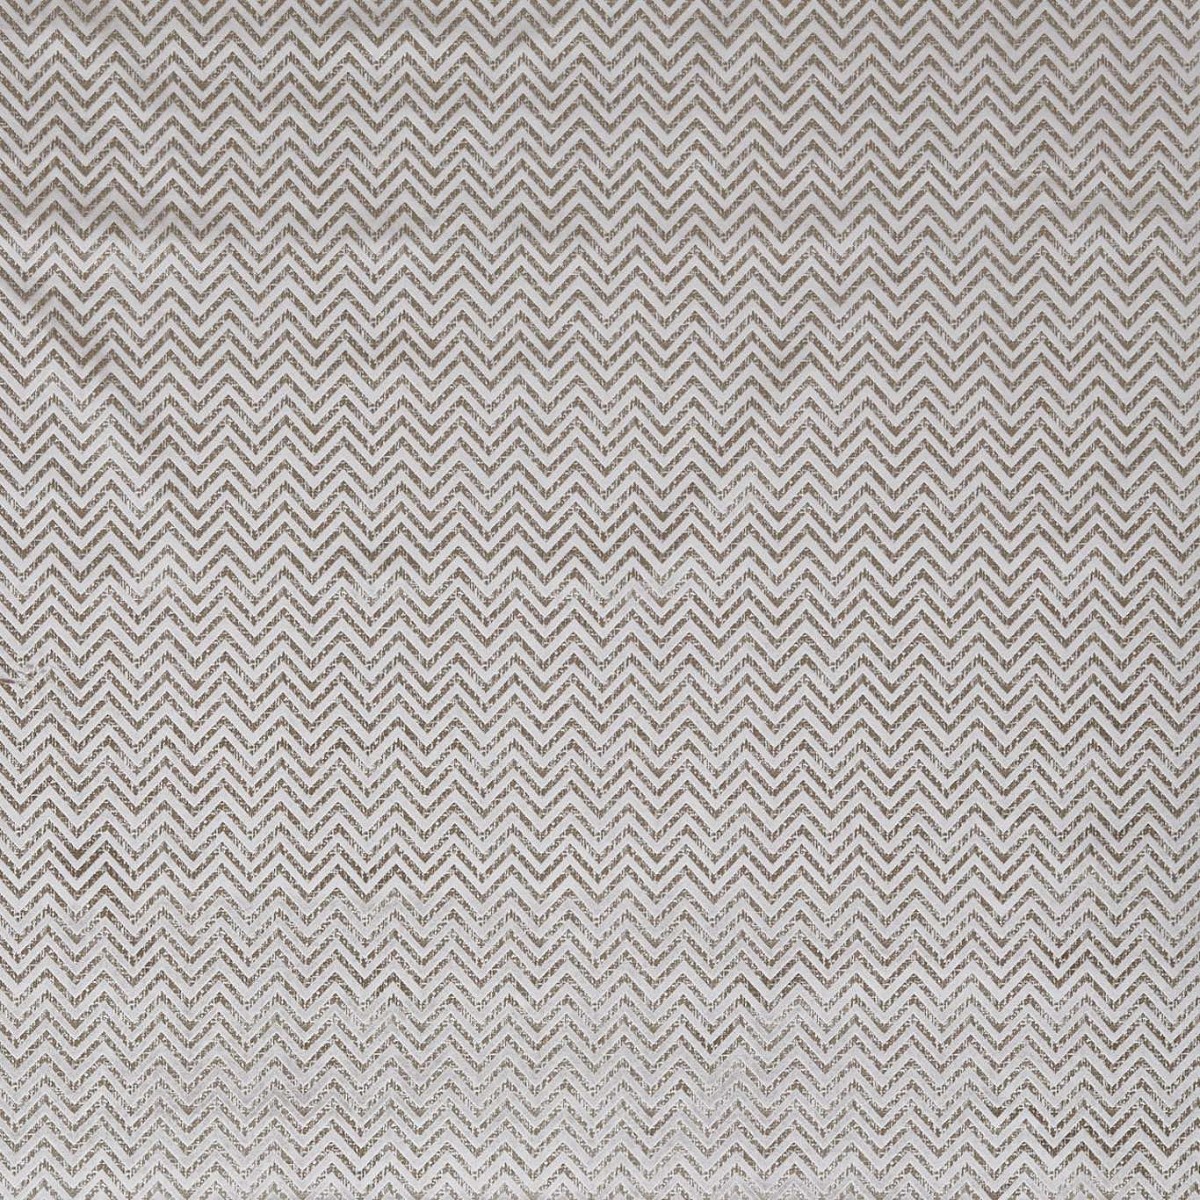 Nexus Taupe Fabric by Studio G